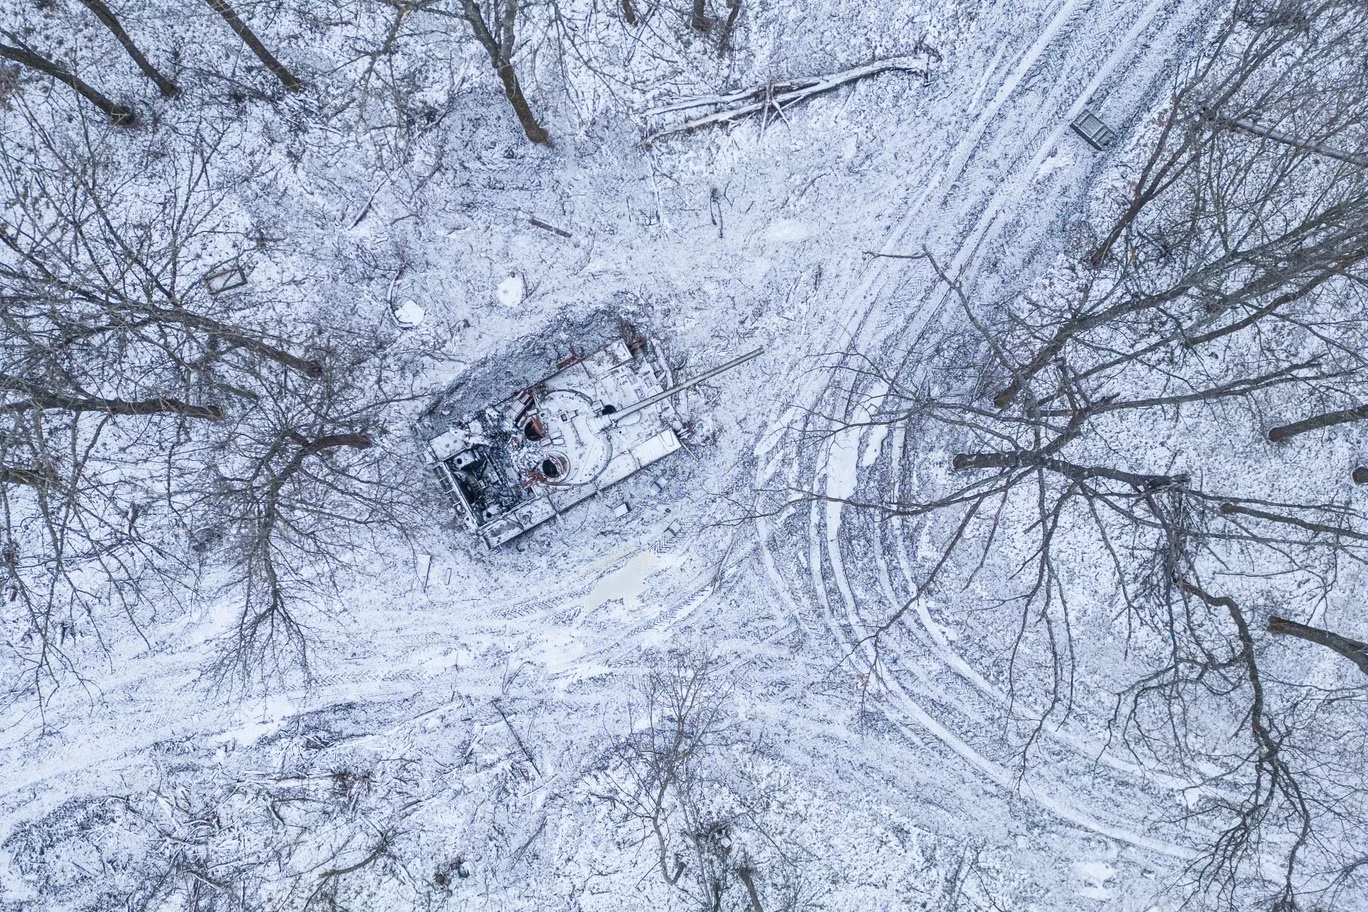 دبابة روسية مدمرة مغطاة بالثلوج في غابة في منطقة خاركيف بأوكرانيا (أ ب)